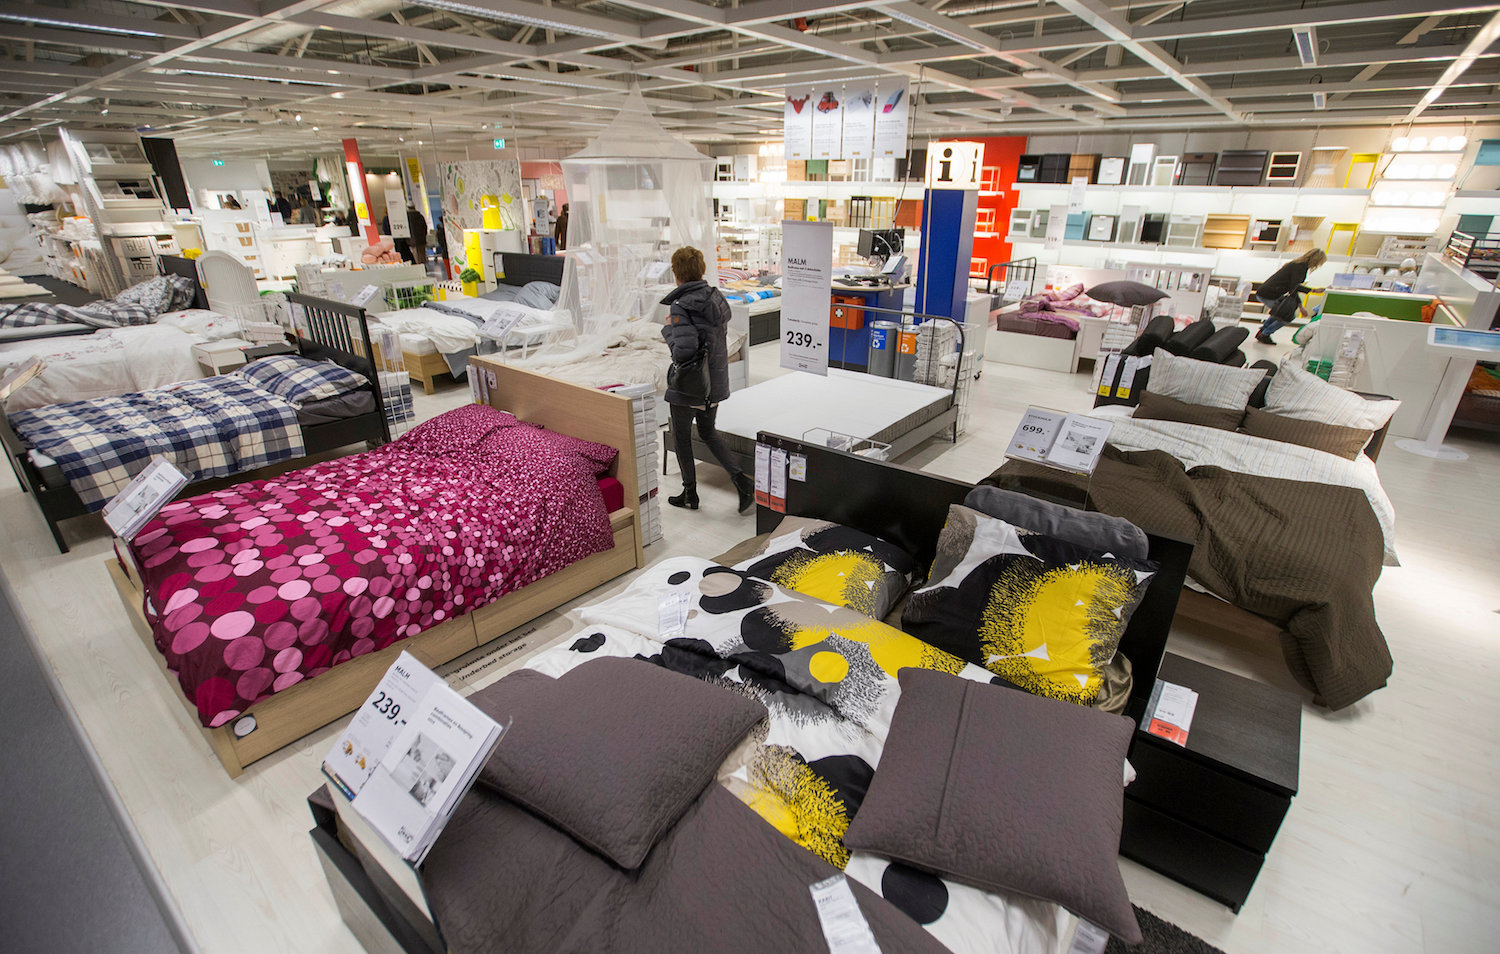 Ikea advierte a sus visitantes que no se queden a dormir en sus tiendas después de cerrar